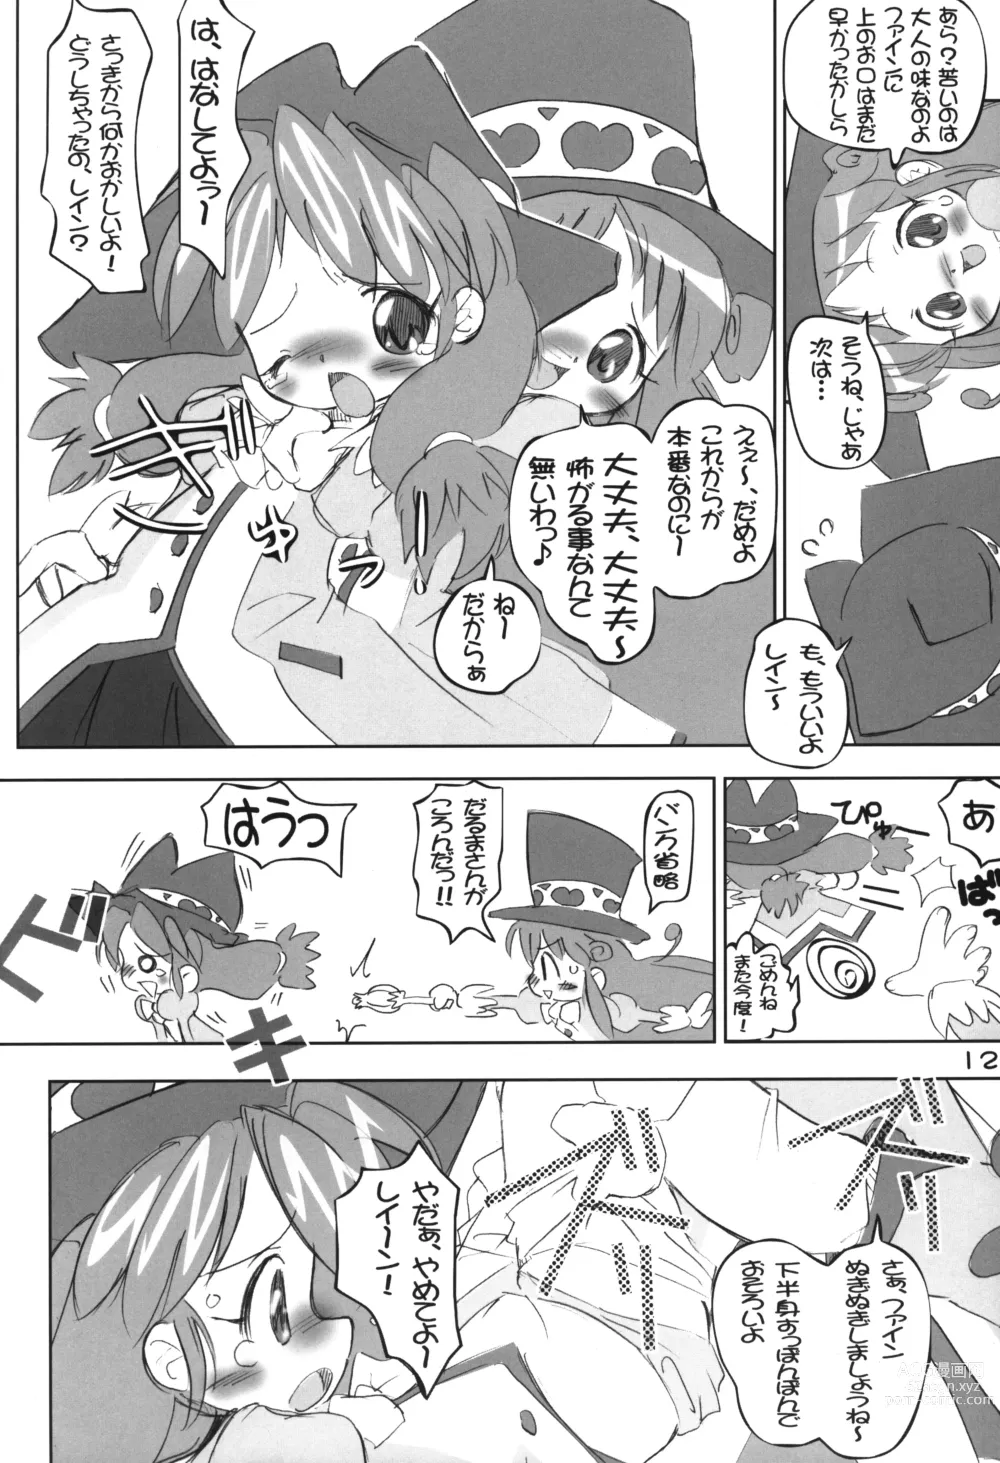 Page 11 of doujinshi Chara to Heart de Cover shikiremasen